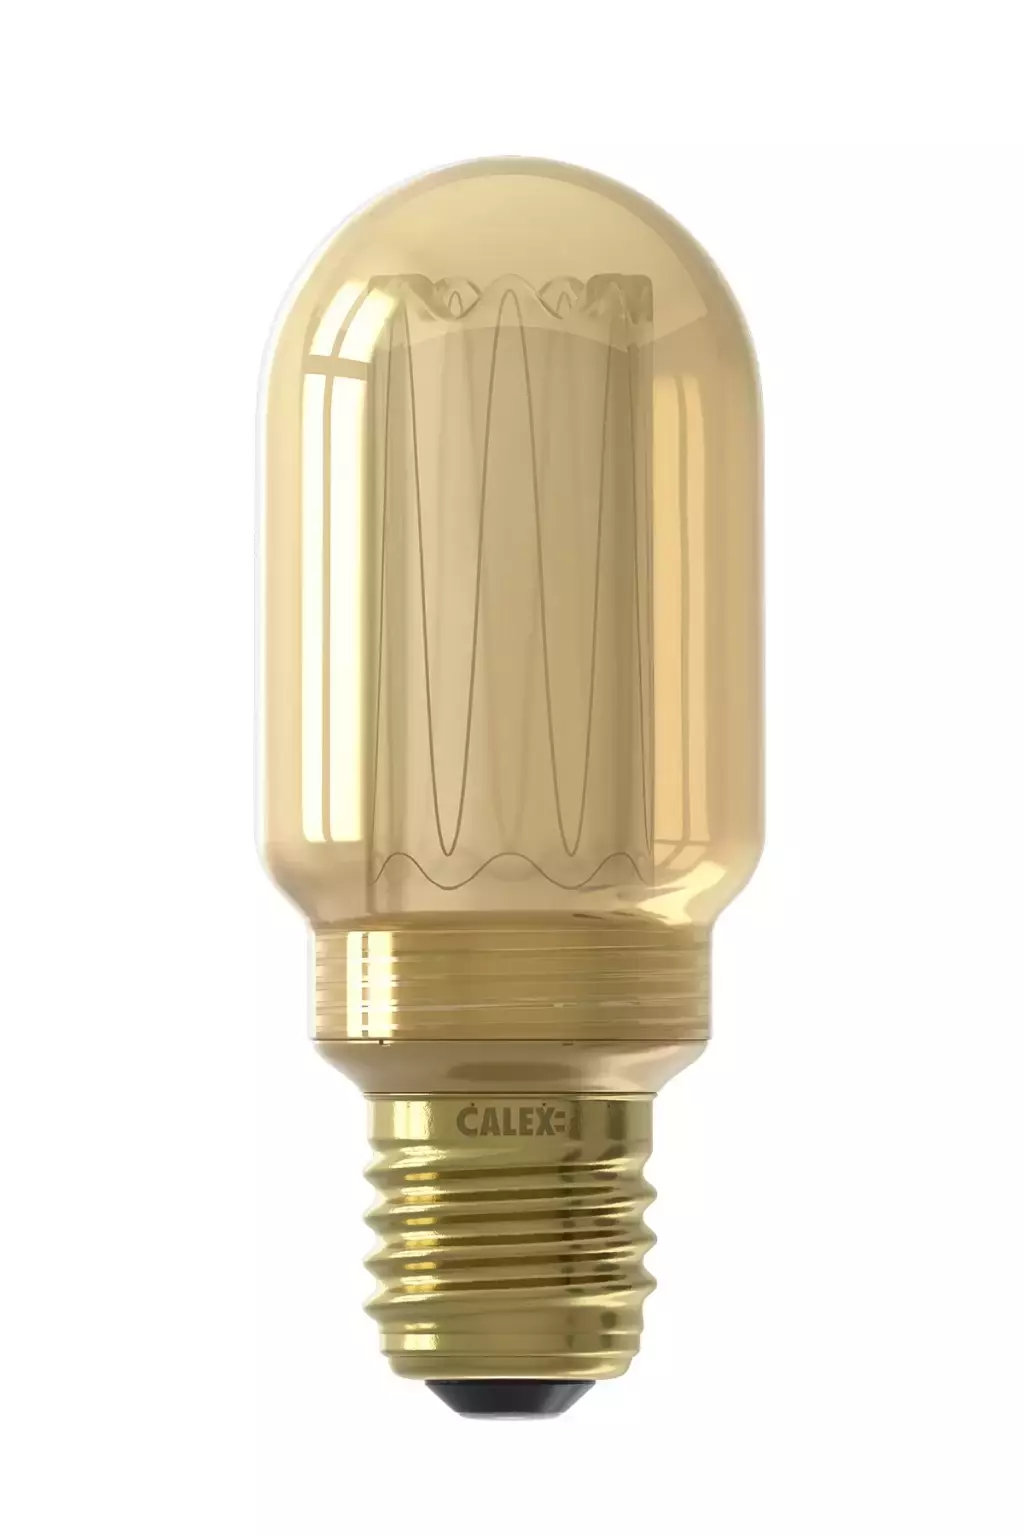 Calex Buis Led Lamp dimbaar - Goud Top Tuincentrum